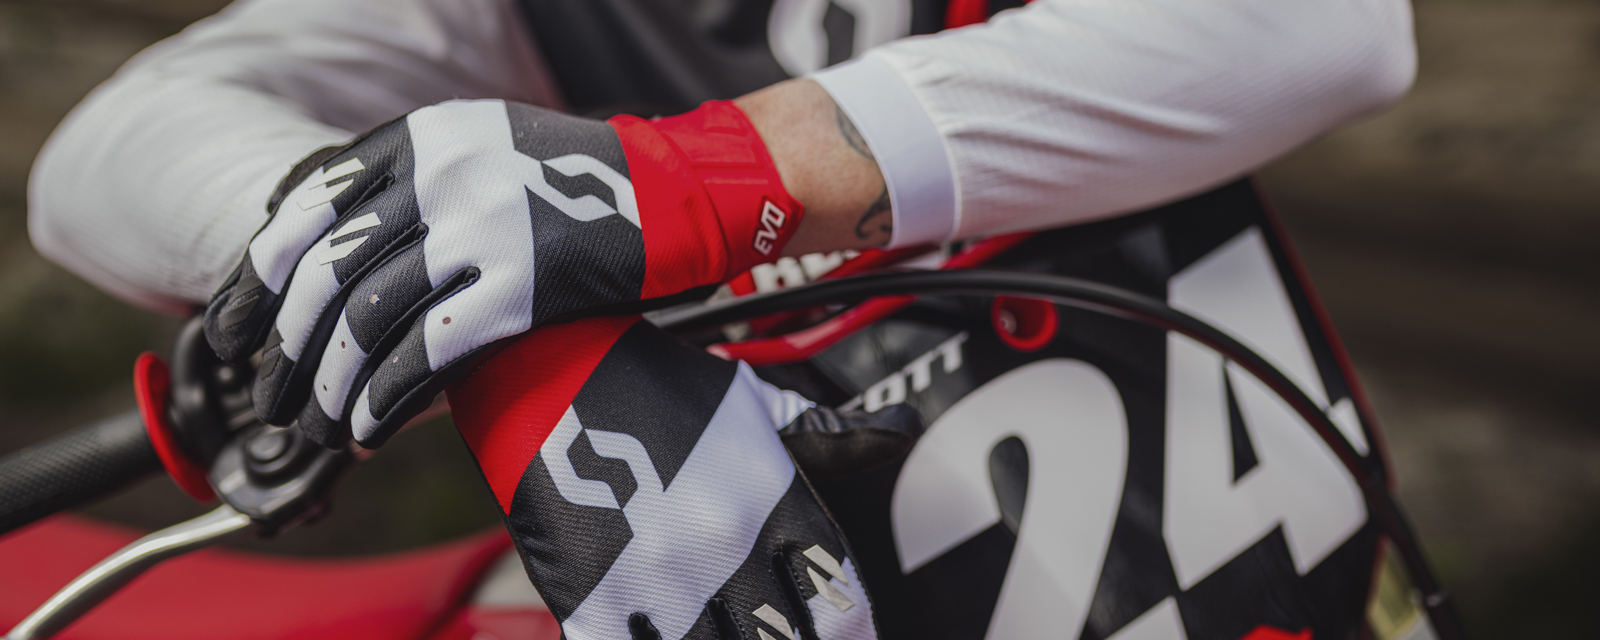 Scott Motocross Gloves |